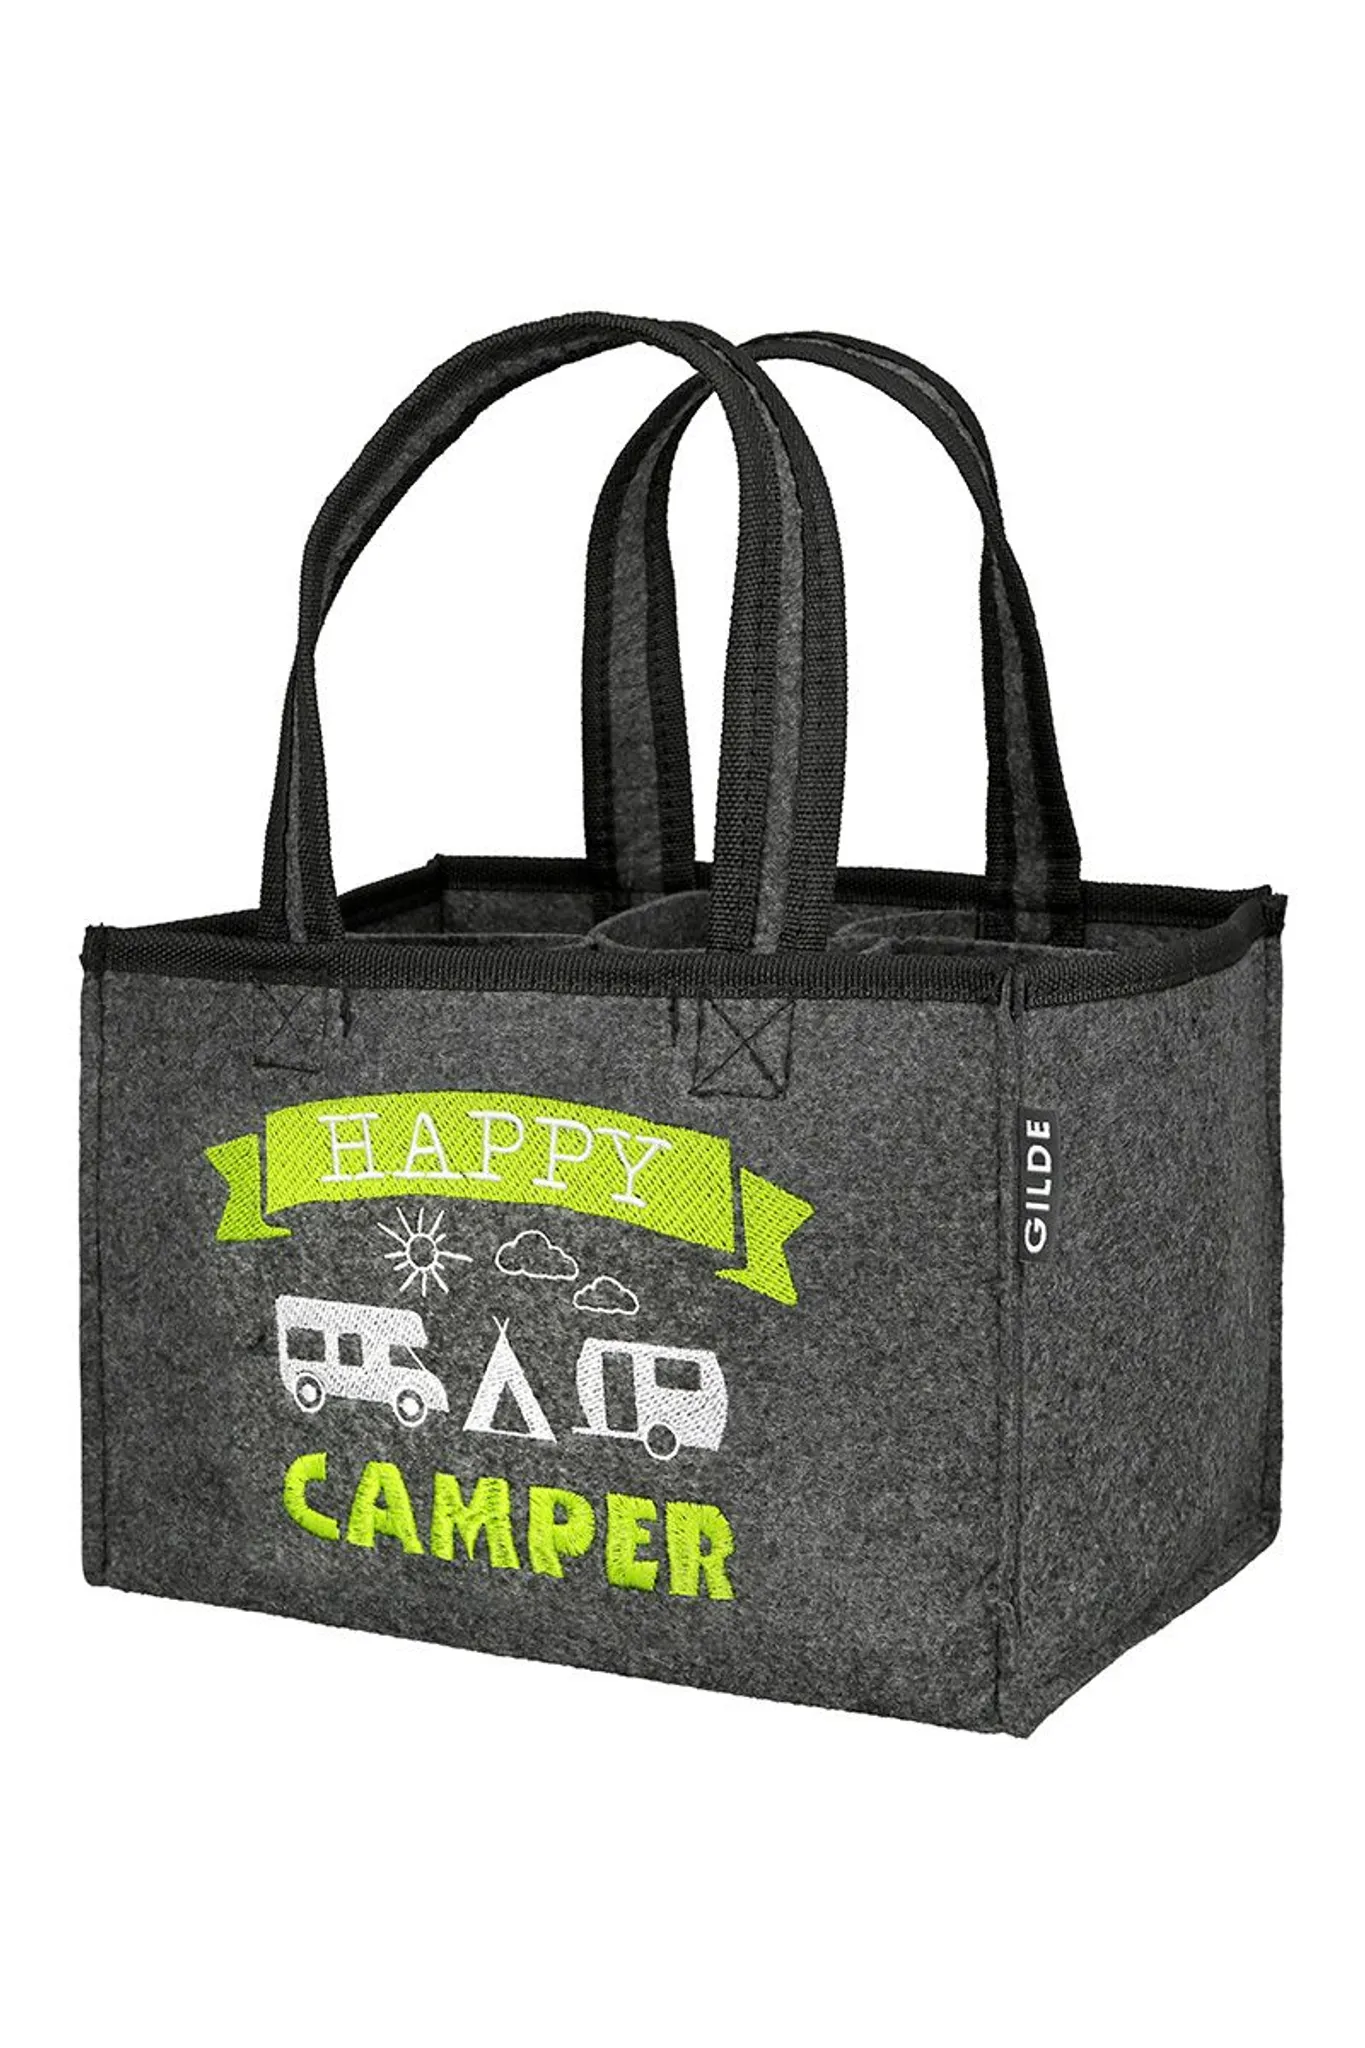 Camper-Tasche Wohnmobil Reifenspur – Produkt – Druckwunder